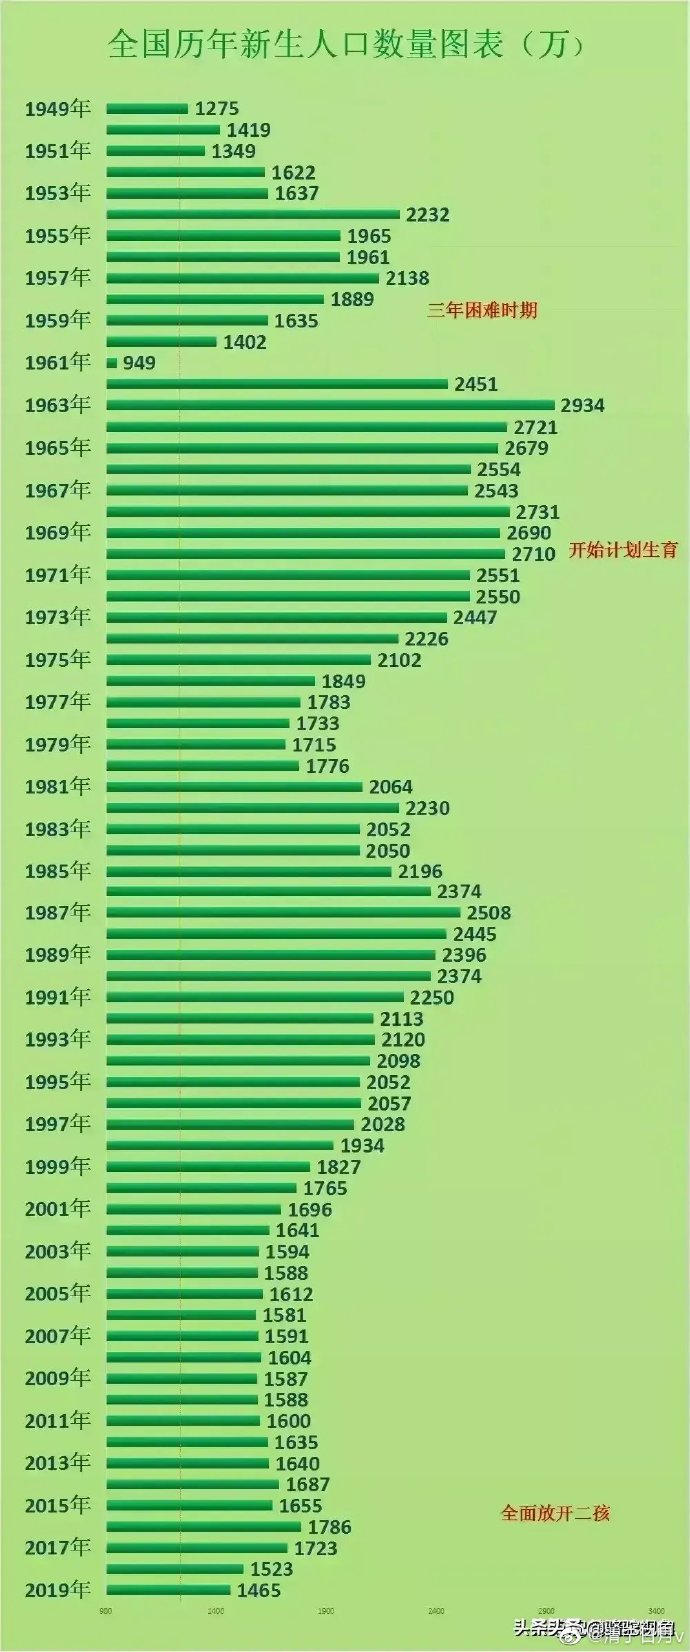 49 年后全国历年出生人口数量表